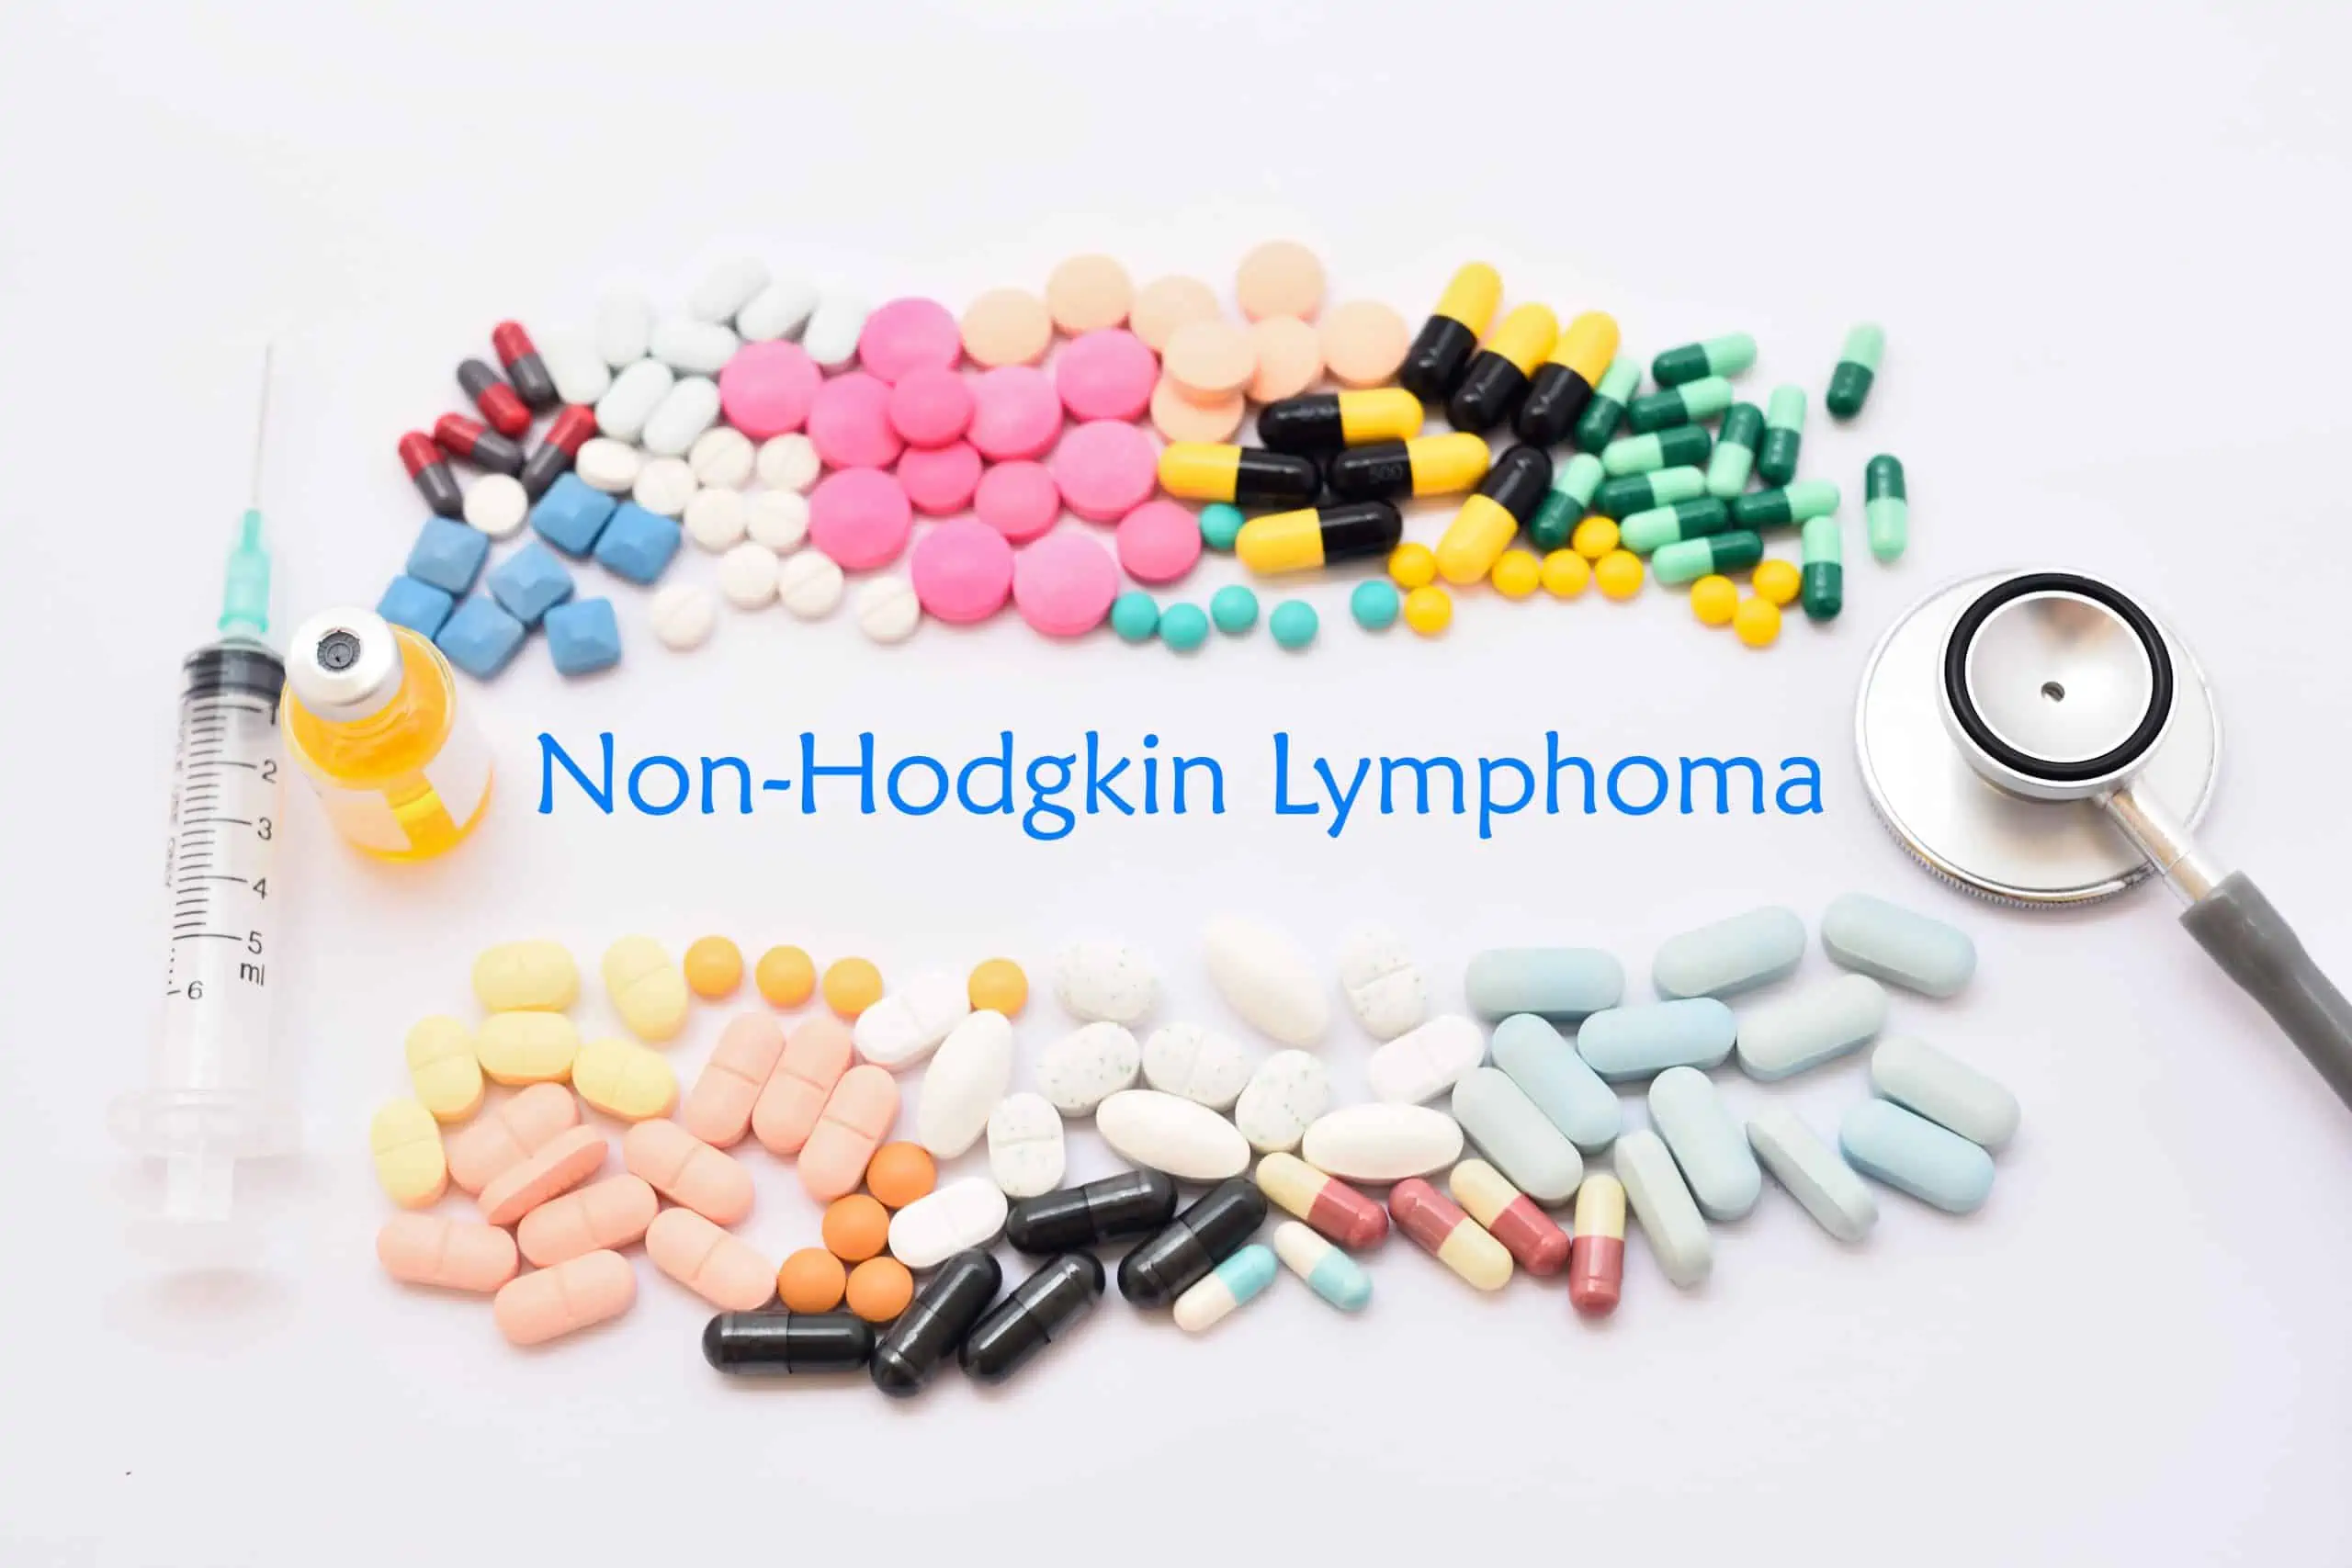 ne-hodgkinovi limfomi - uzrok, simptomi, liječenje